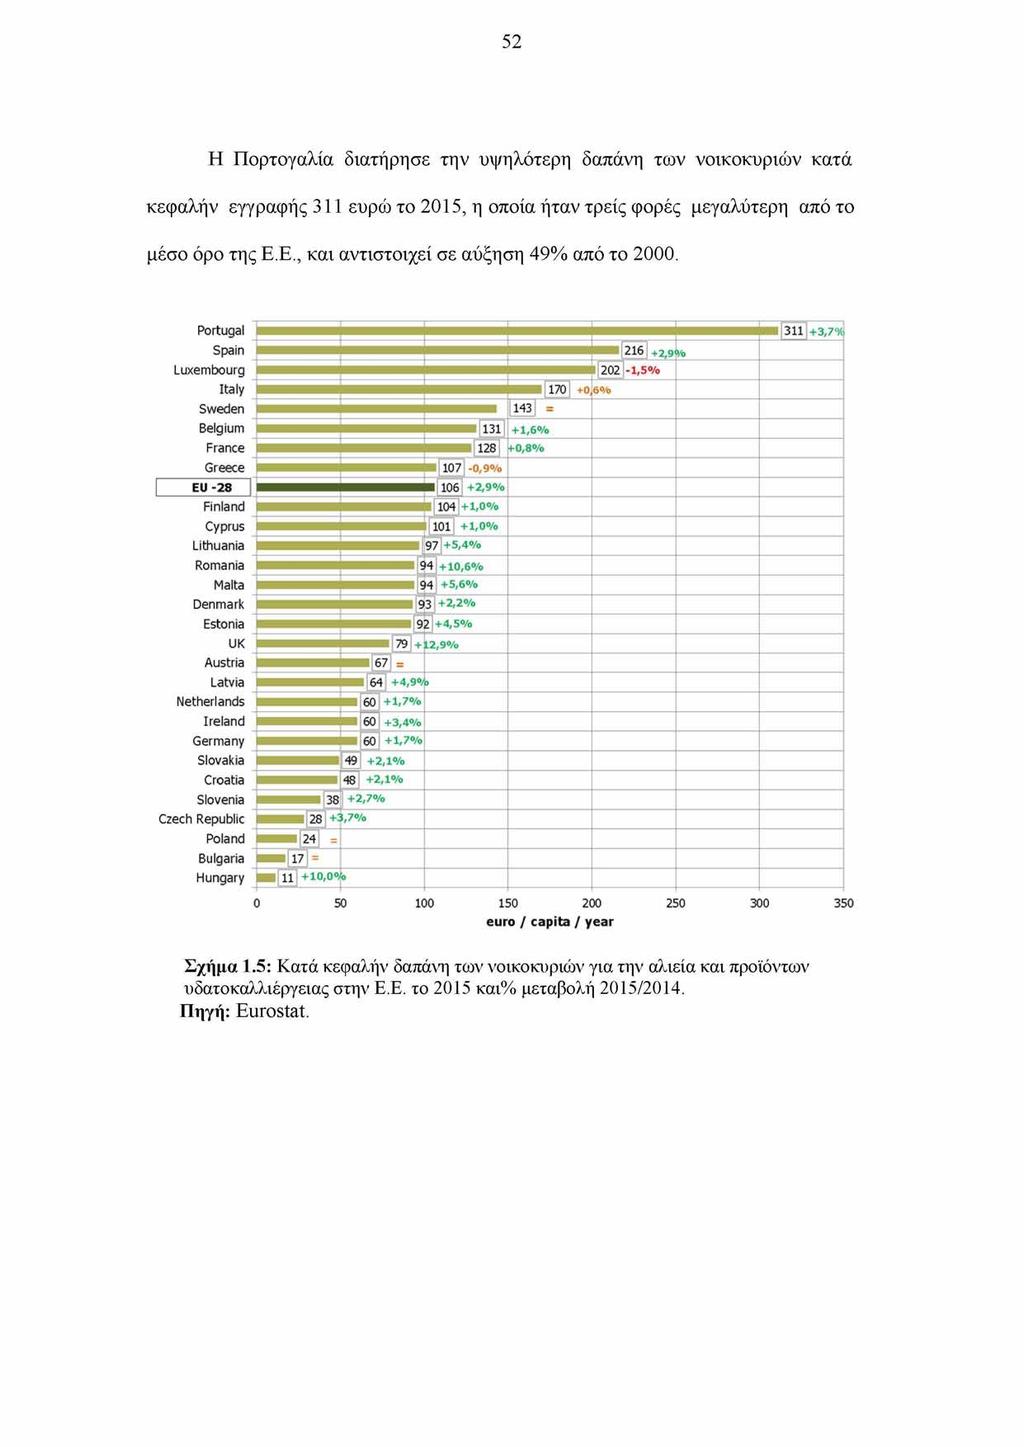 52 Η Πορτογαλία διατήρησε την υψηλότερη δαπάνη των νοικοκυριών κατά κεφαλήν εγγραφής 311 ευρώ το 2015, η οποία ήταν τρείς φορές μεγαλύτερη από το μέσο όρο της Ε.